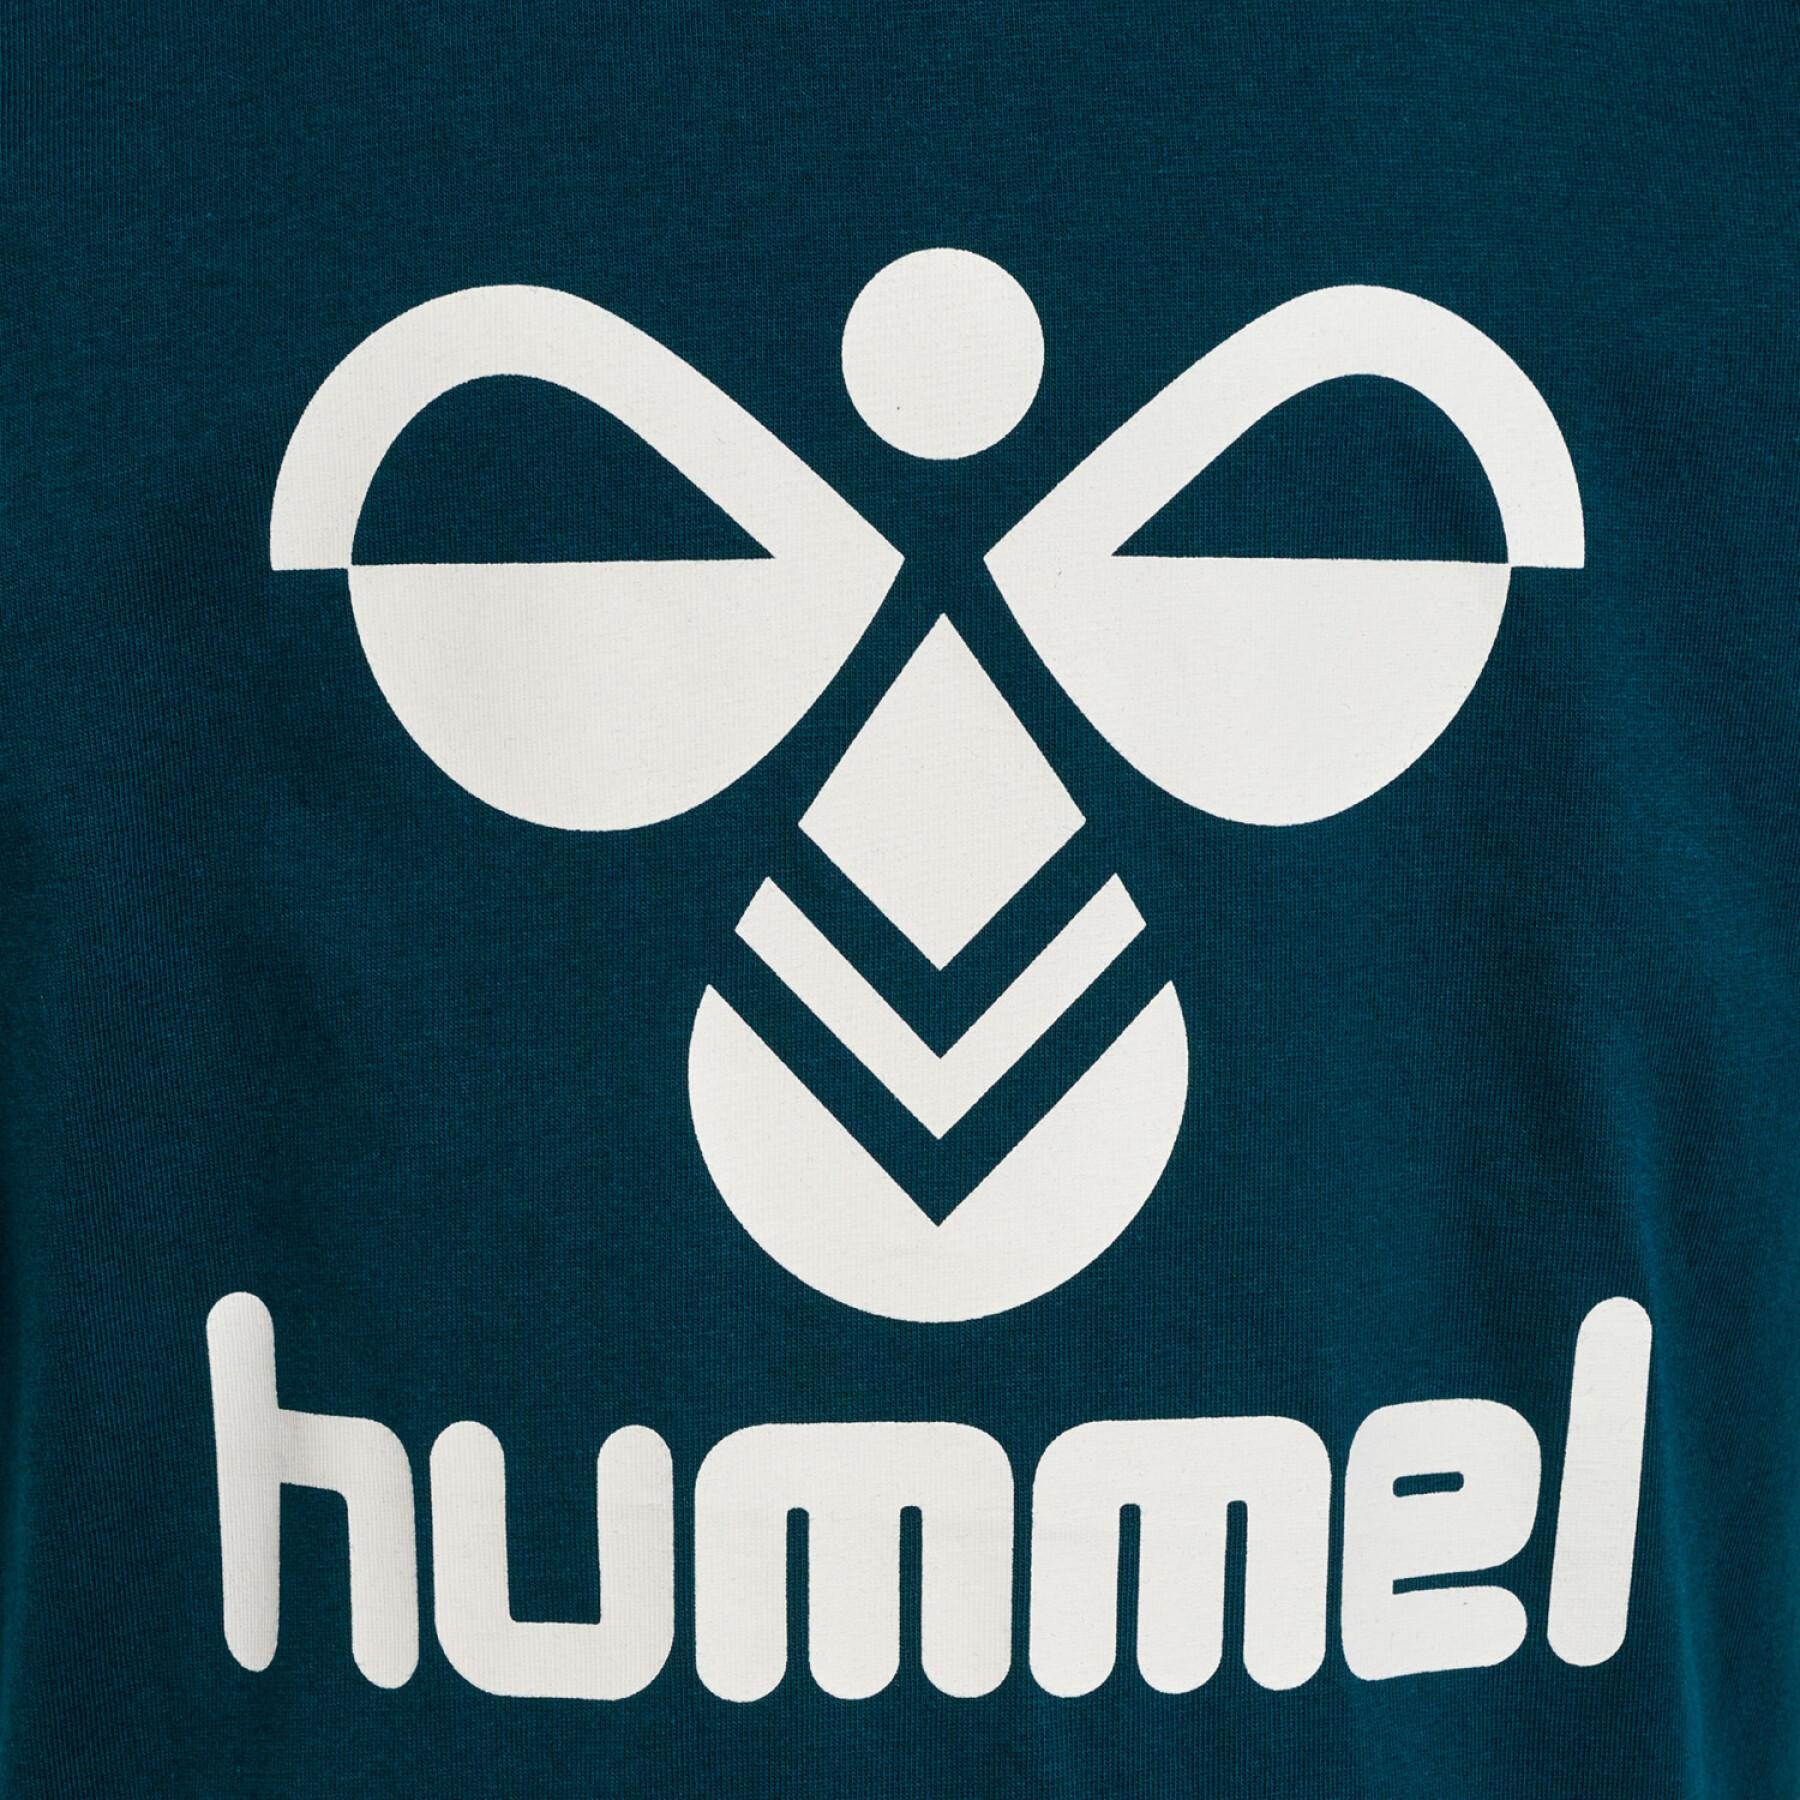 T-shirts voor kinderen Hummel Tres (x2)